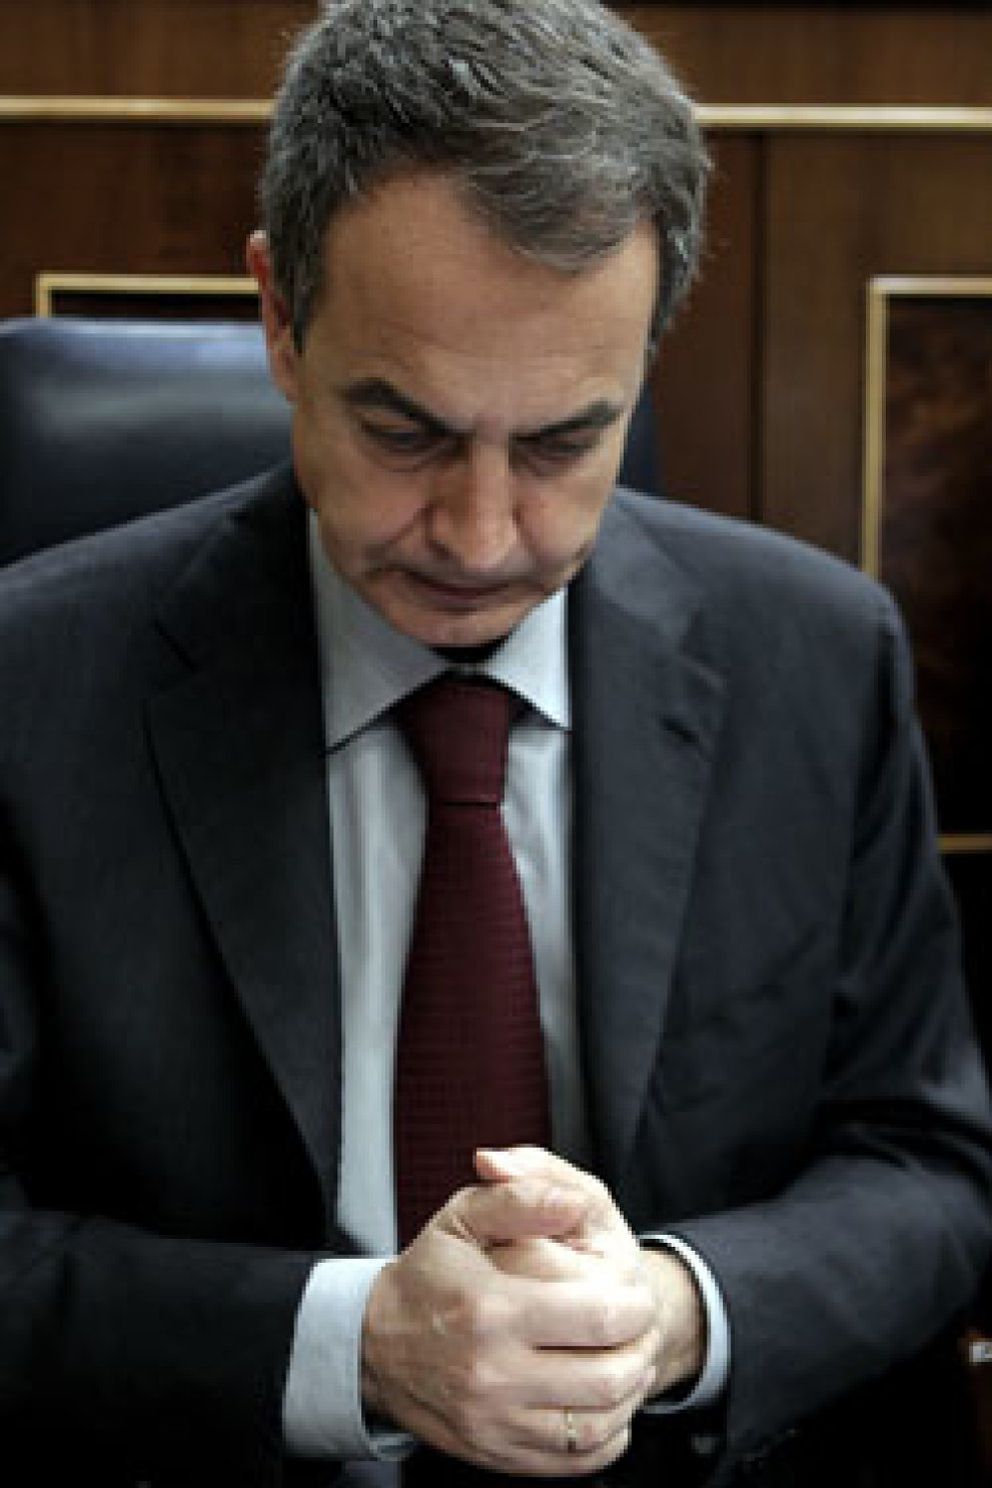 Foto: Zapatero anunciará una subida de impuestos a los ricos “en breve”